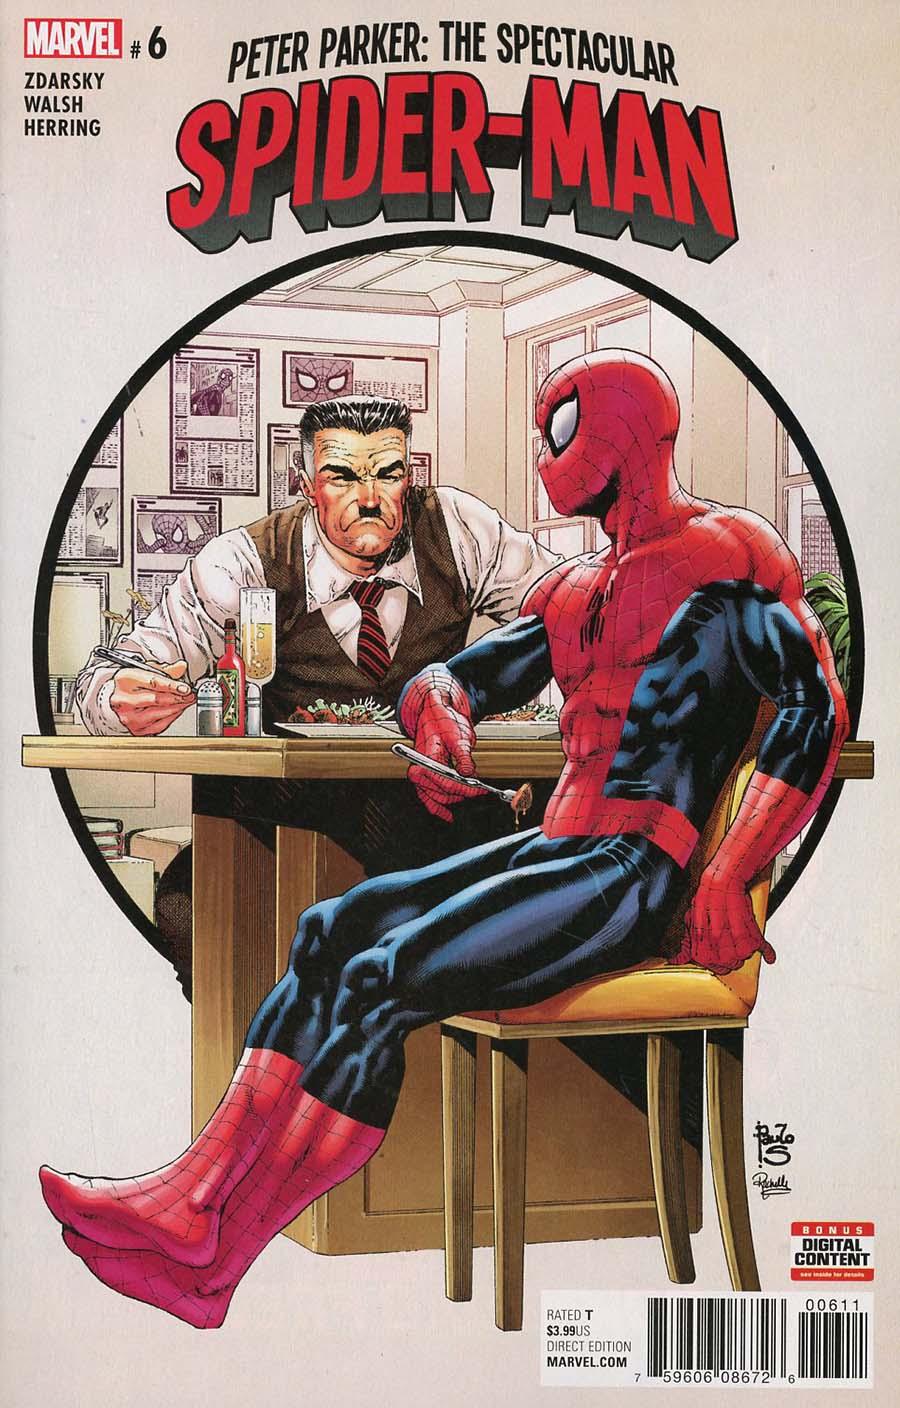 Peter Parker Spectacular Spider-Man Vol. 1 #6